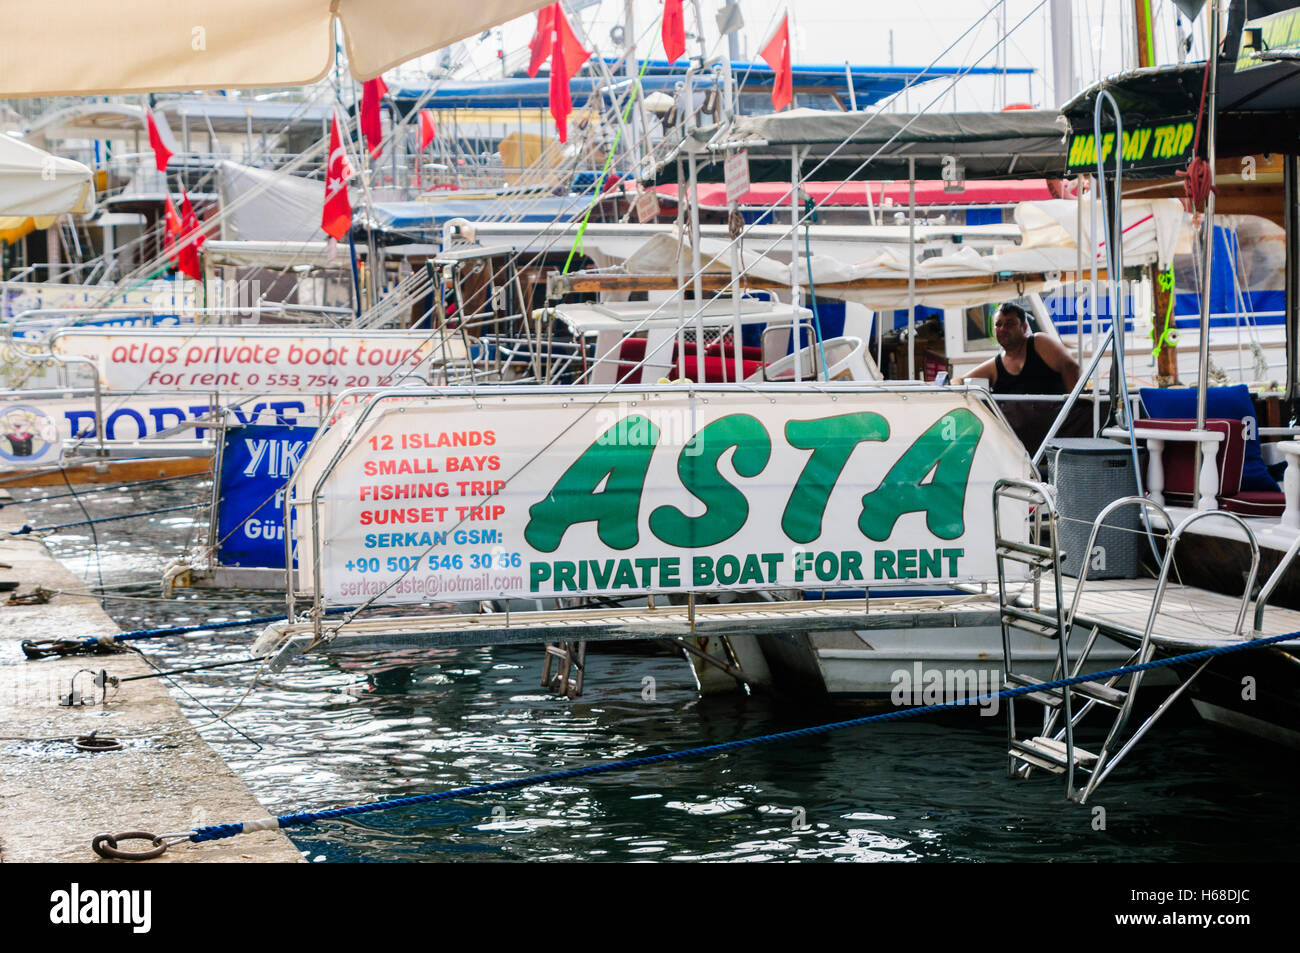 Signes sur les coursives des bateaux proposant des excursions en bateau privé pour les touristes et les visiteurs. Banque D'Images